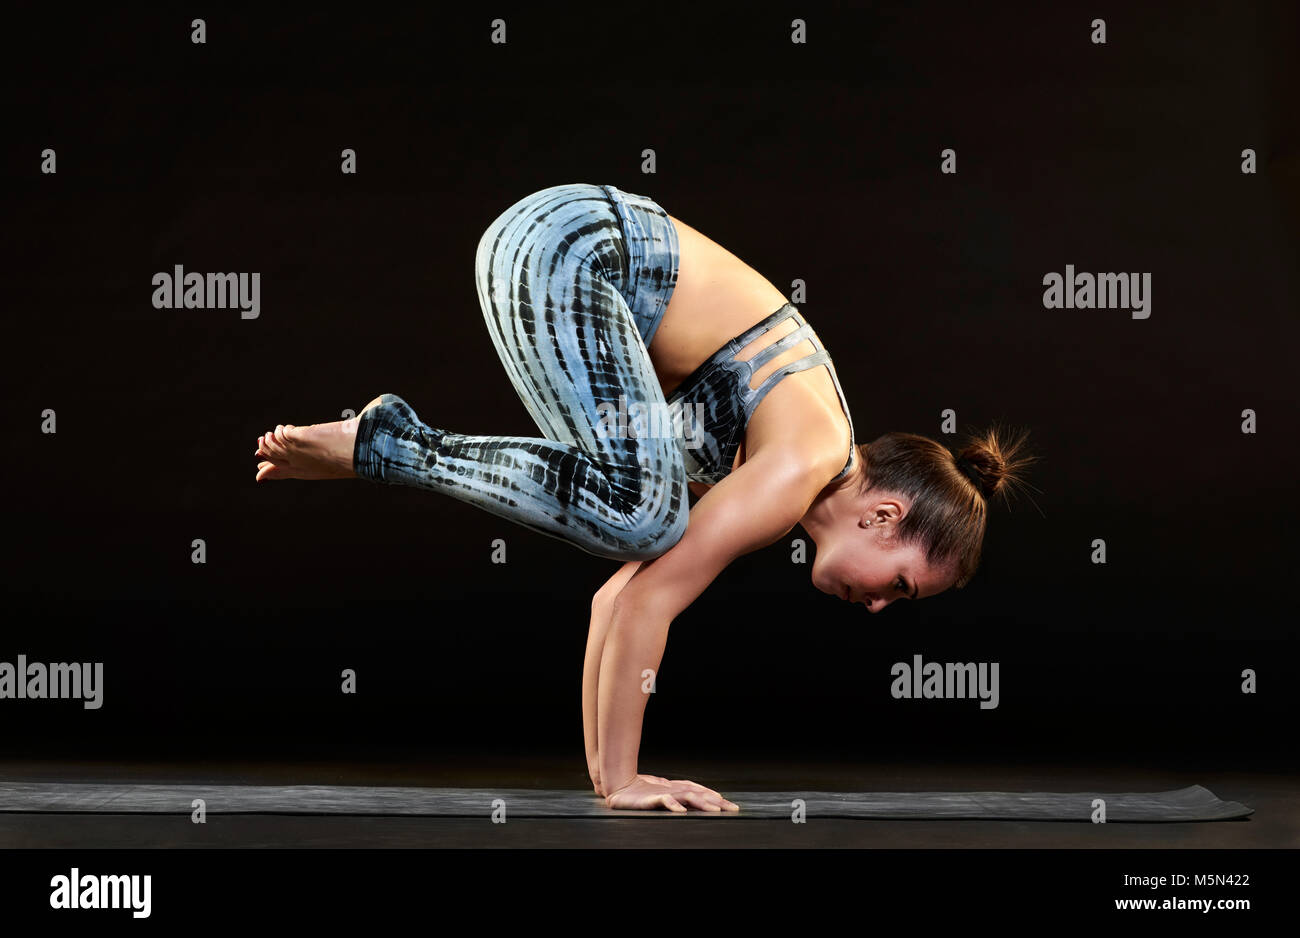 Montare Atletica Giovane donna dimostrando una cornacchia pongono yoga in equilibrio su le braccia con il suo corpo in una posizione arricciata, vista laterale sul nero Foto Stock